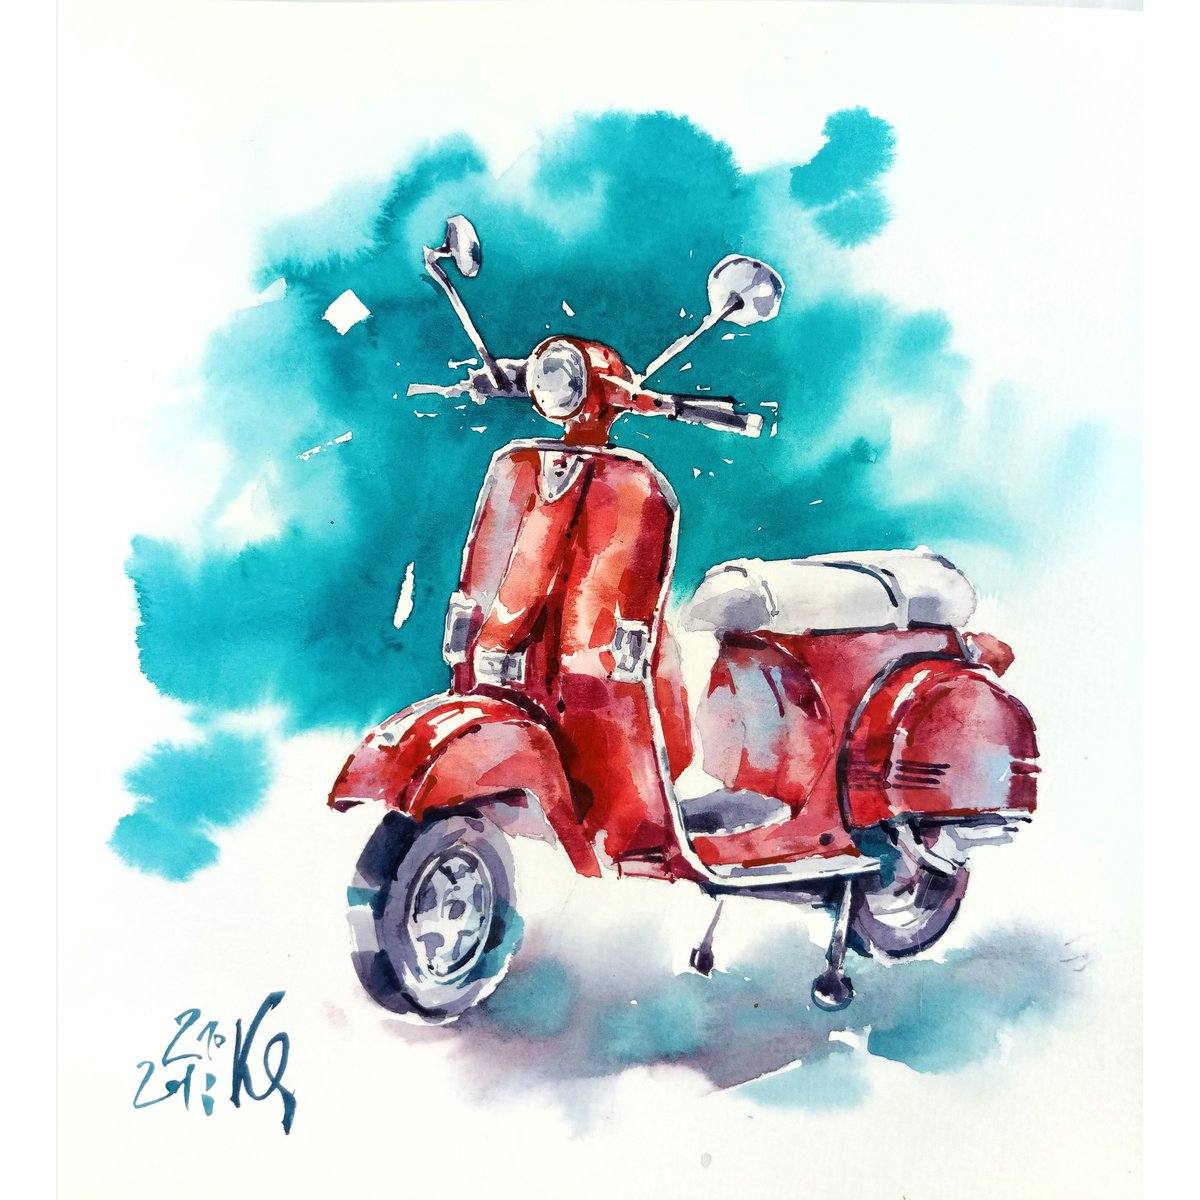 Retro motorcycle original watercolor artwork adventure road by Ksenia Selianko